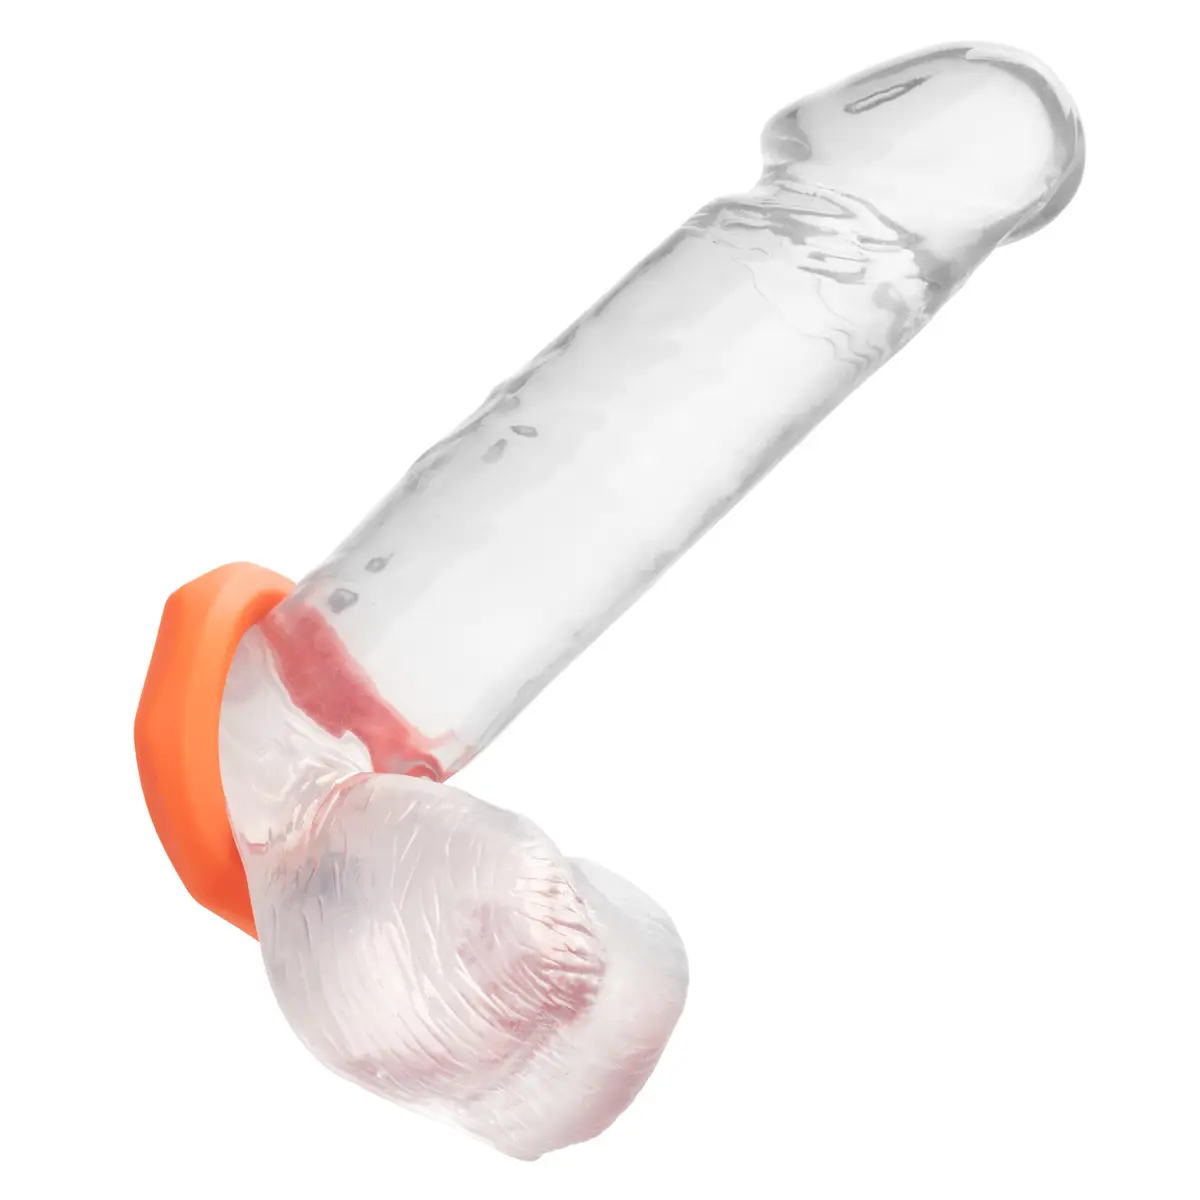 7. Calexotics Alpha Liquid Silicone Sexagon Cock Ring, Orange